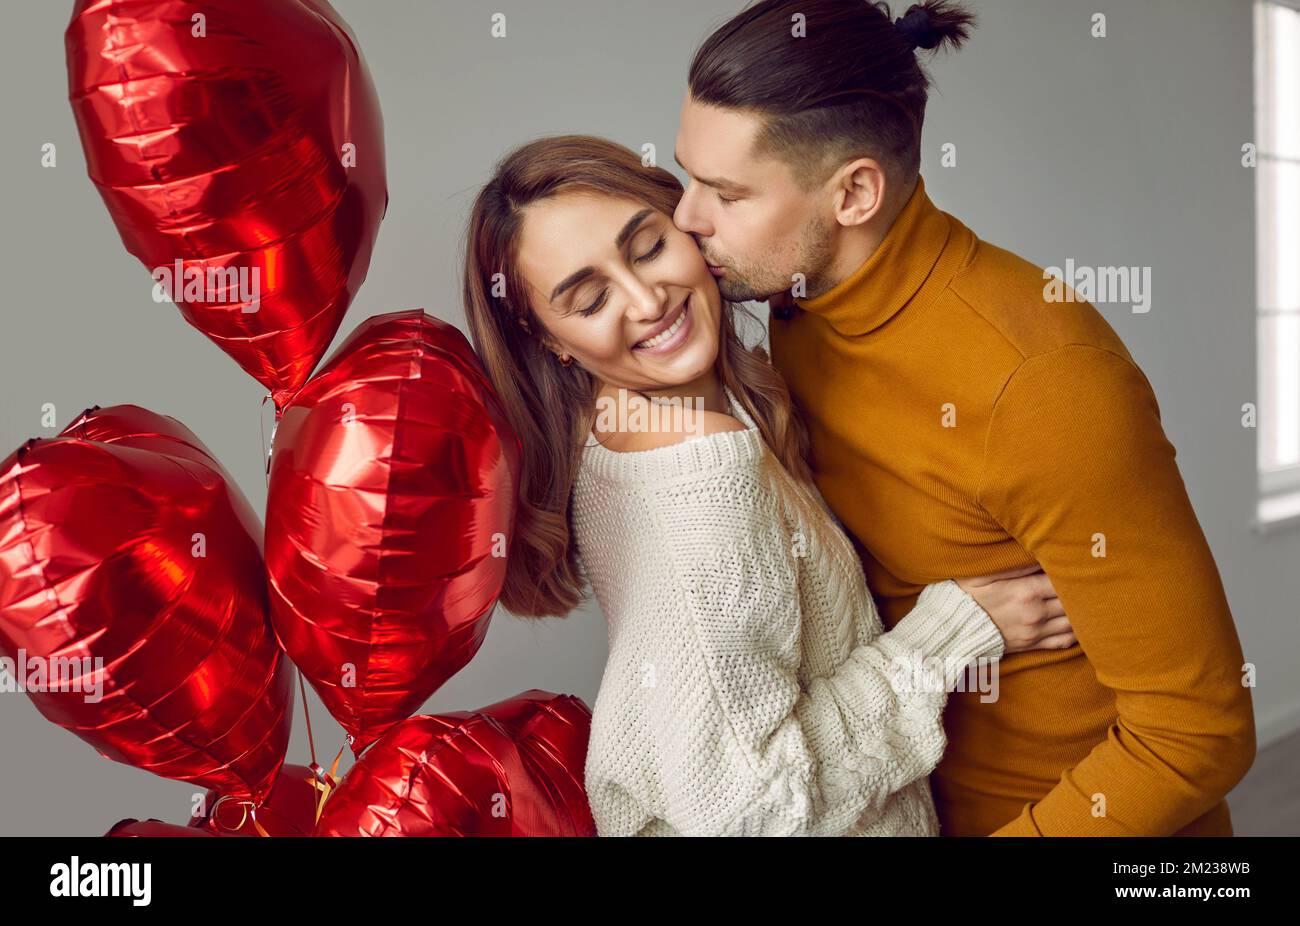 Jeune couple heureux embrassant et embrassant avec des ballons en forme de coeur Banque D'Images